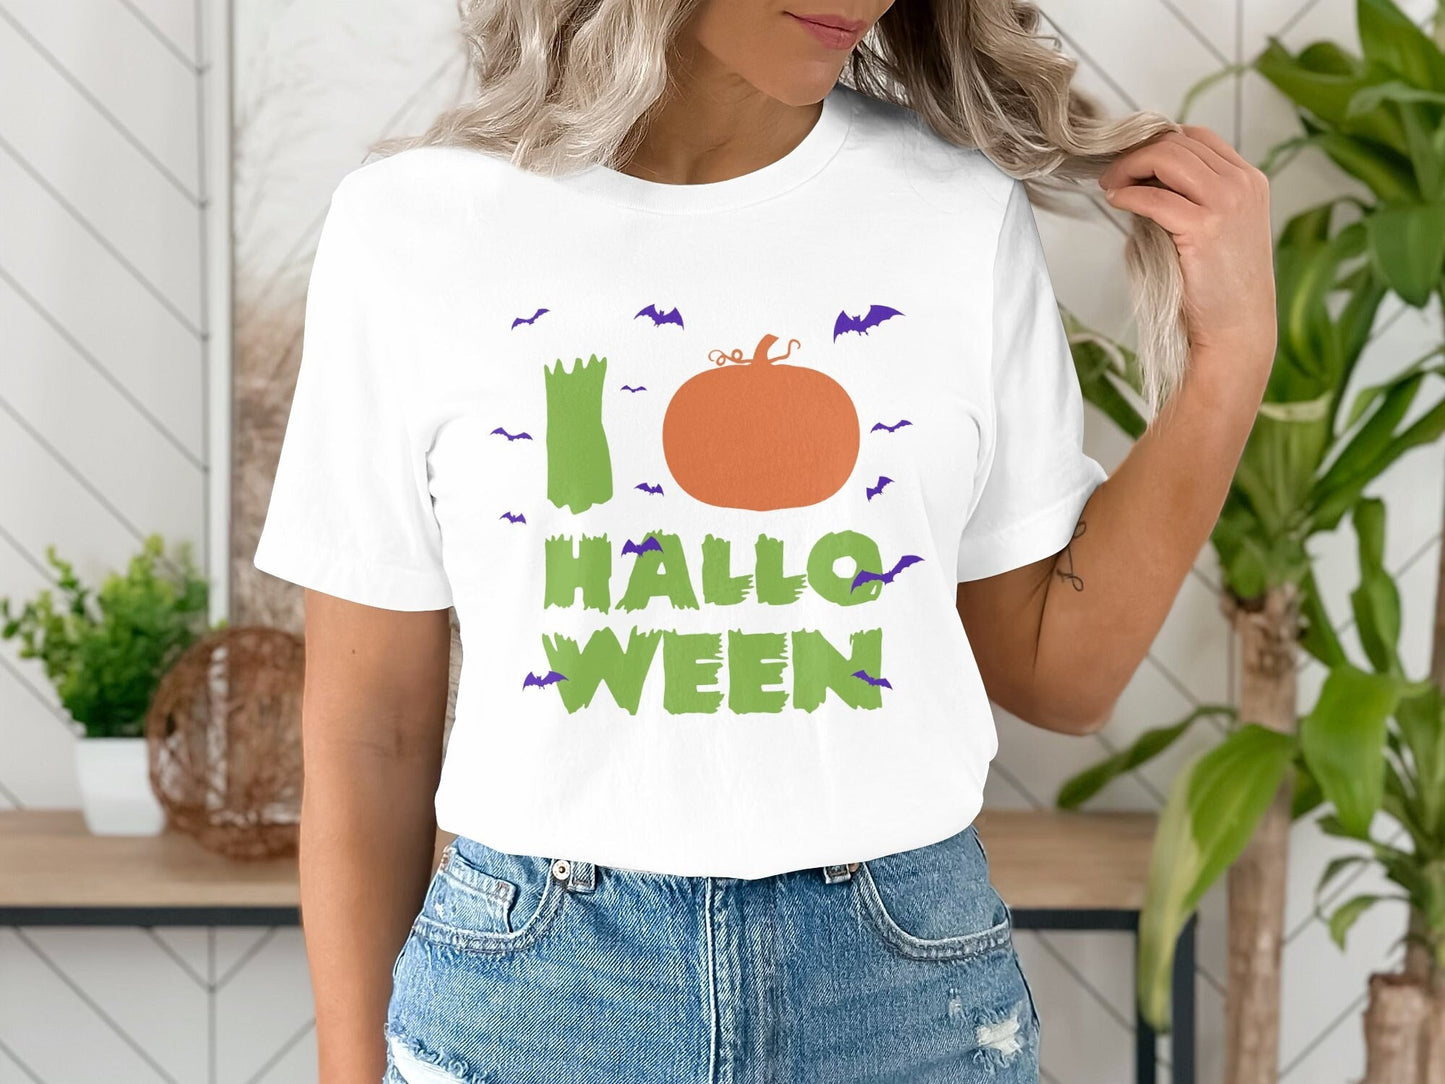 I Love Hallo, Halloween Shirt, Funny Halloween T-Shirt, Retro Halloween T-Shirt, Vintage Halloween Shirt for Women Men Boys Girls